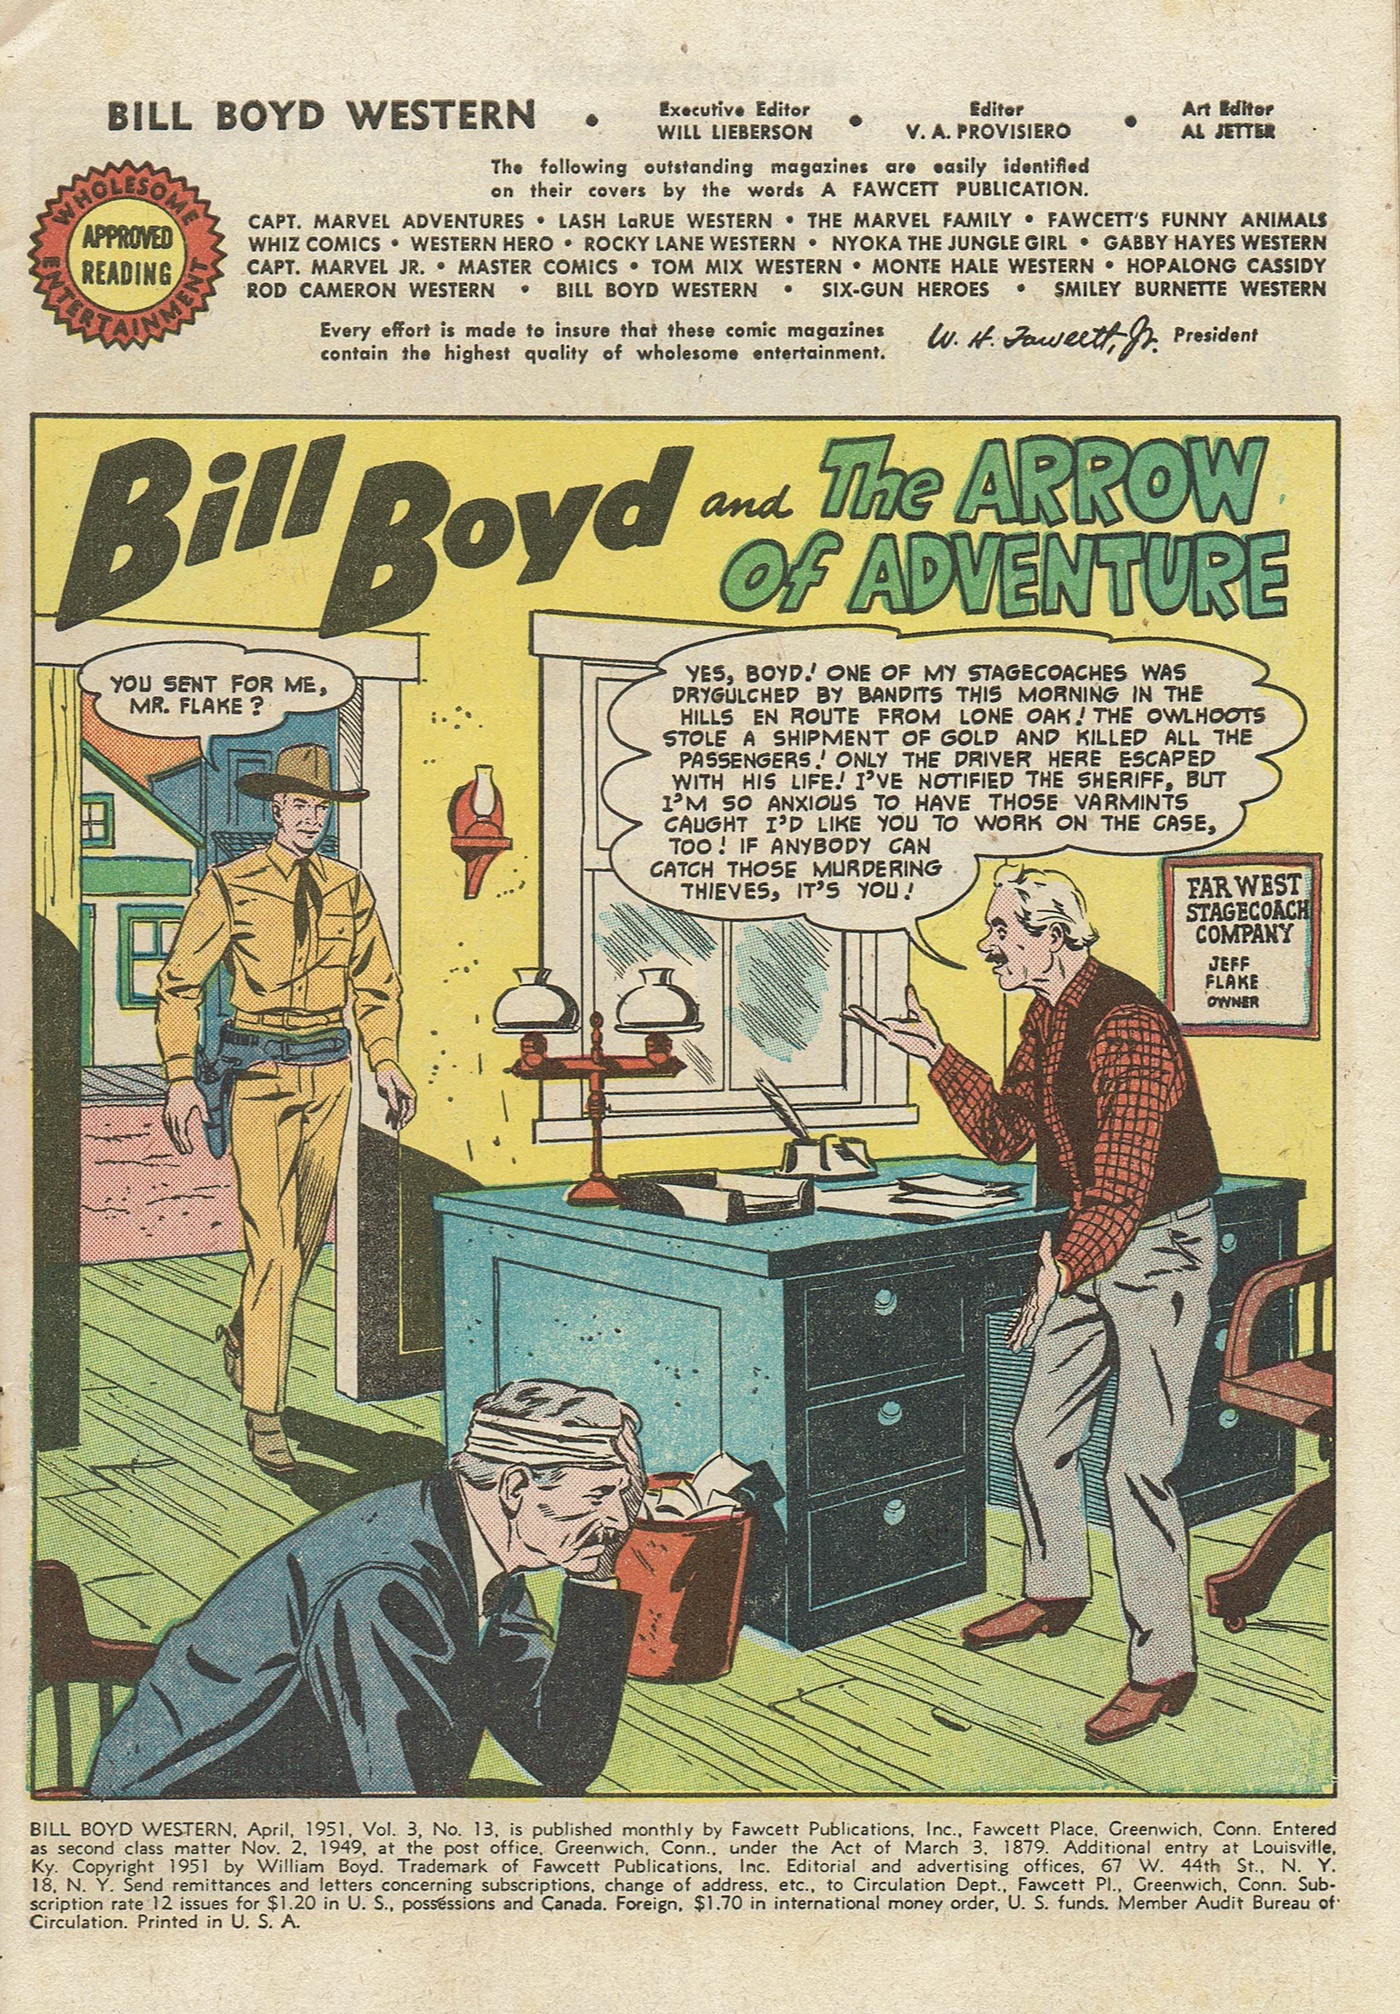 Read online Bill Boyd Western comic -  Issue #13 - 3